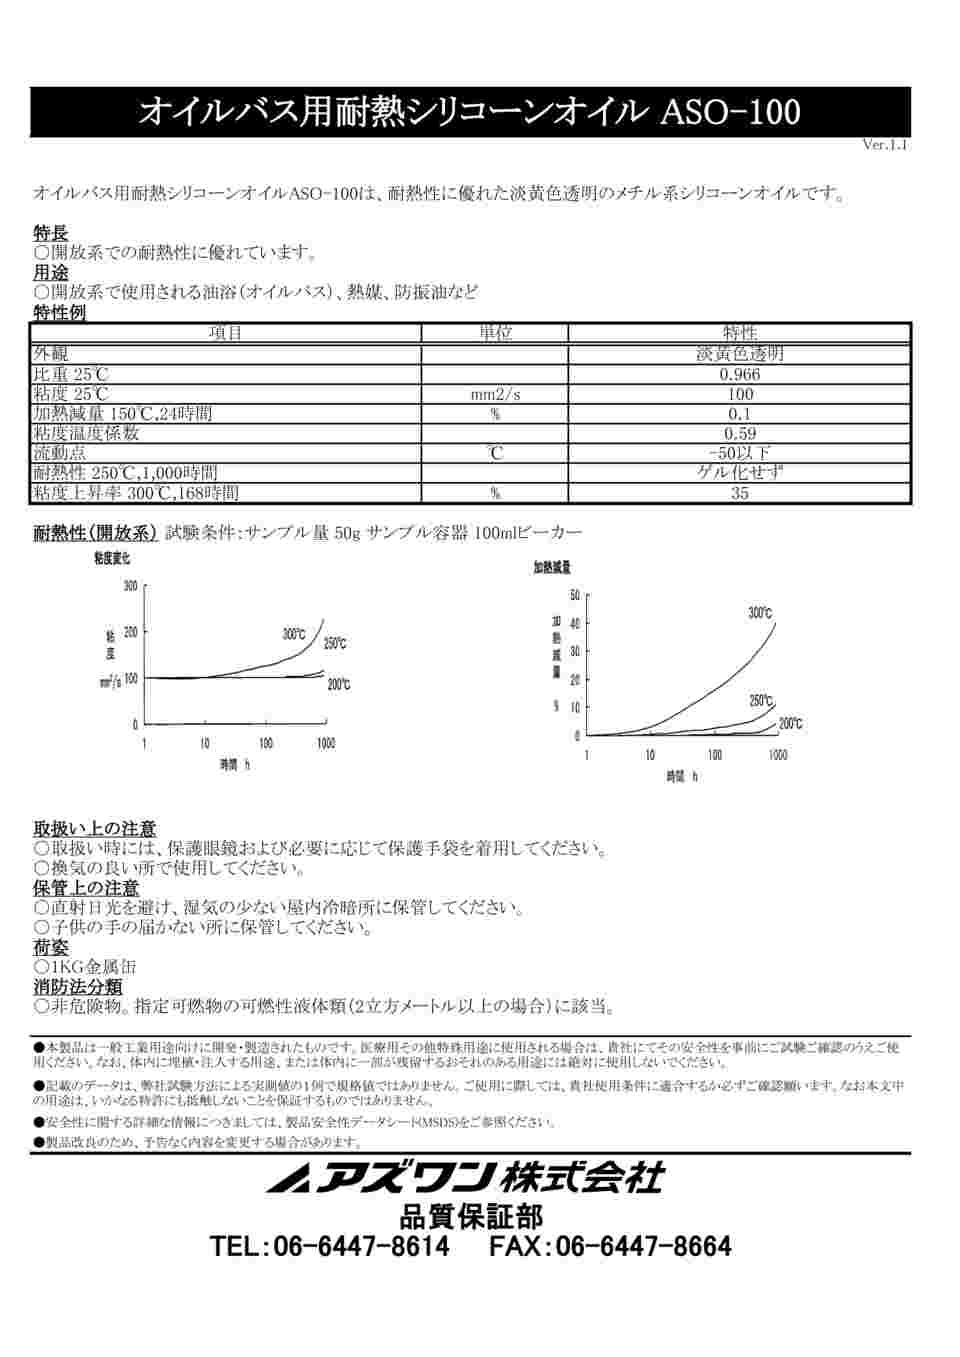 2-9146-01 オイルバス用耐熱シリコーンオイル 1kg ASO-100 【AXEL 